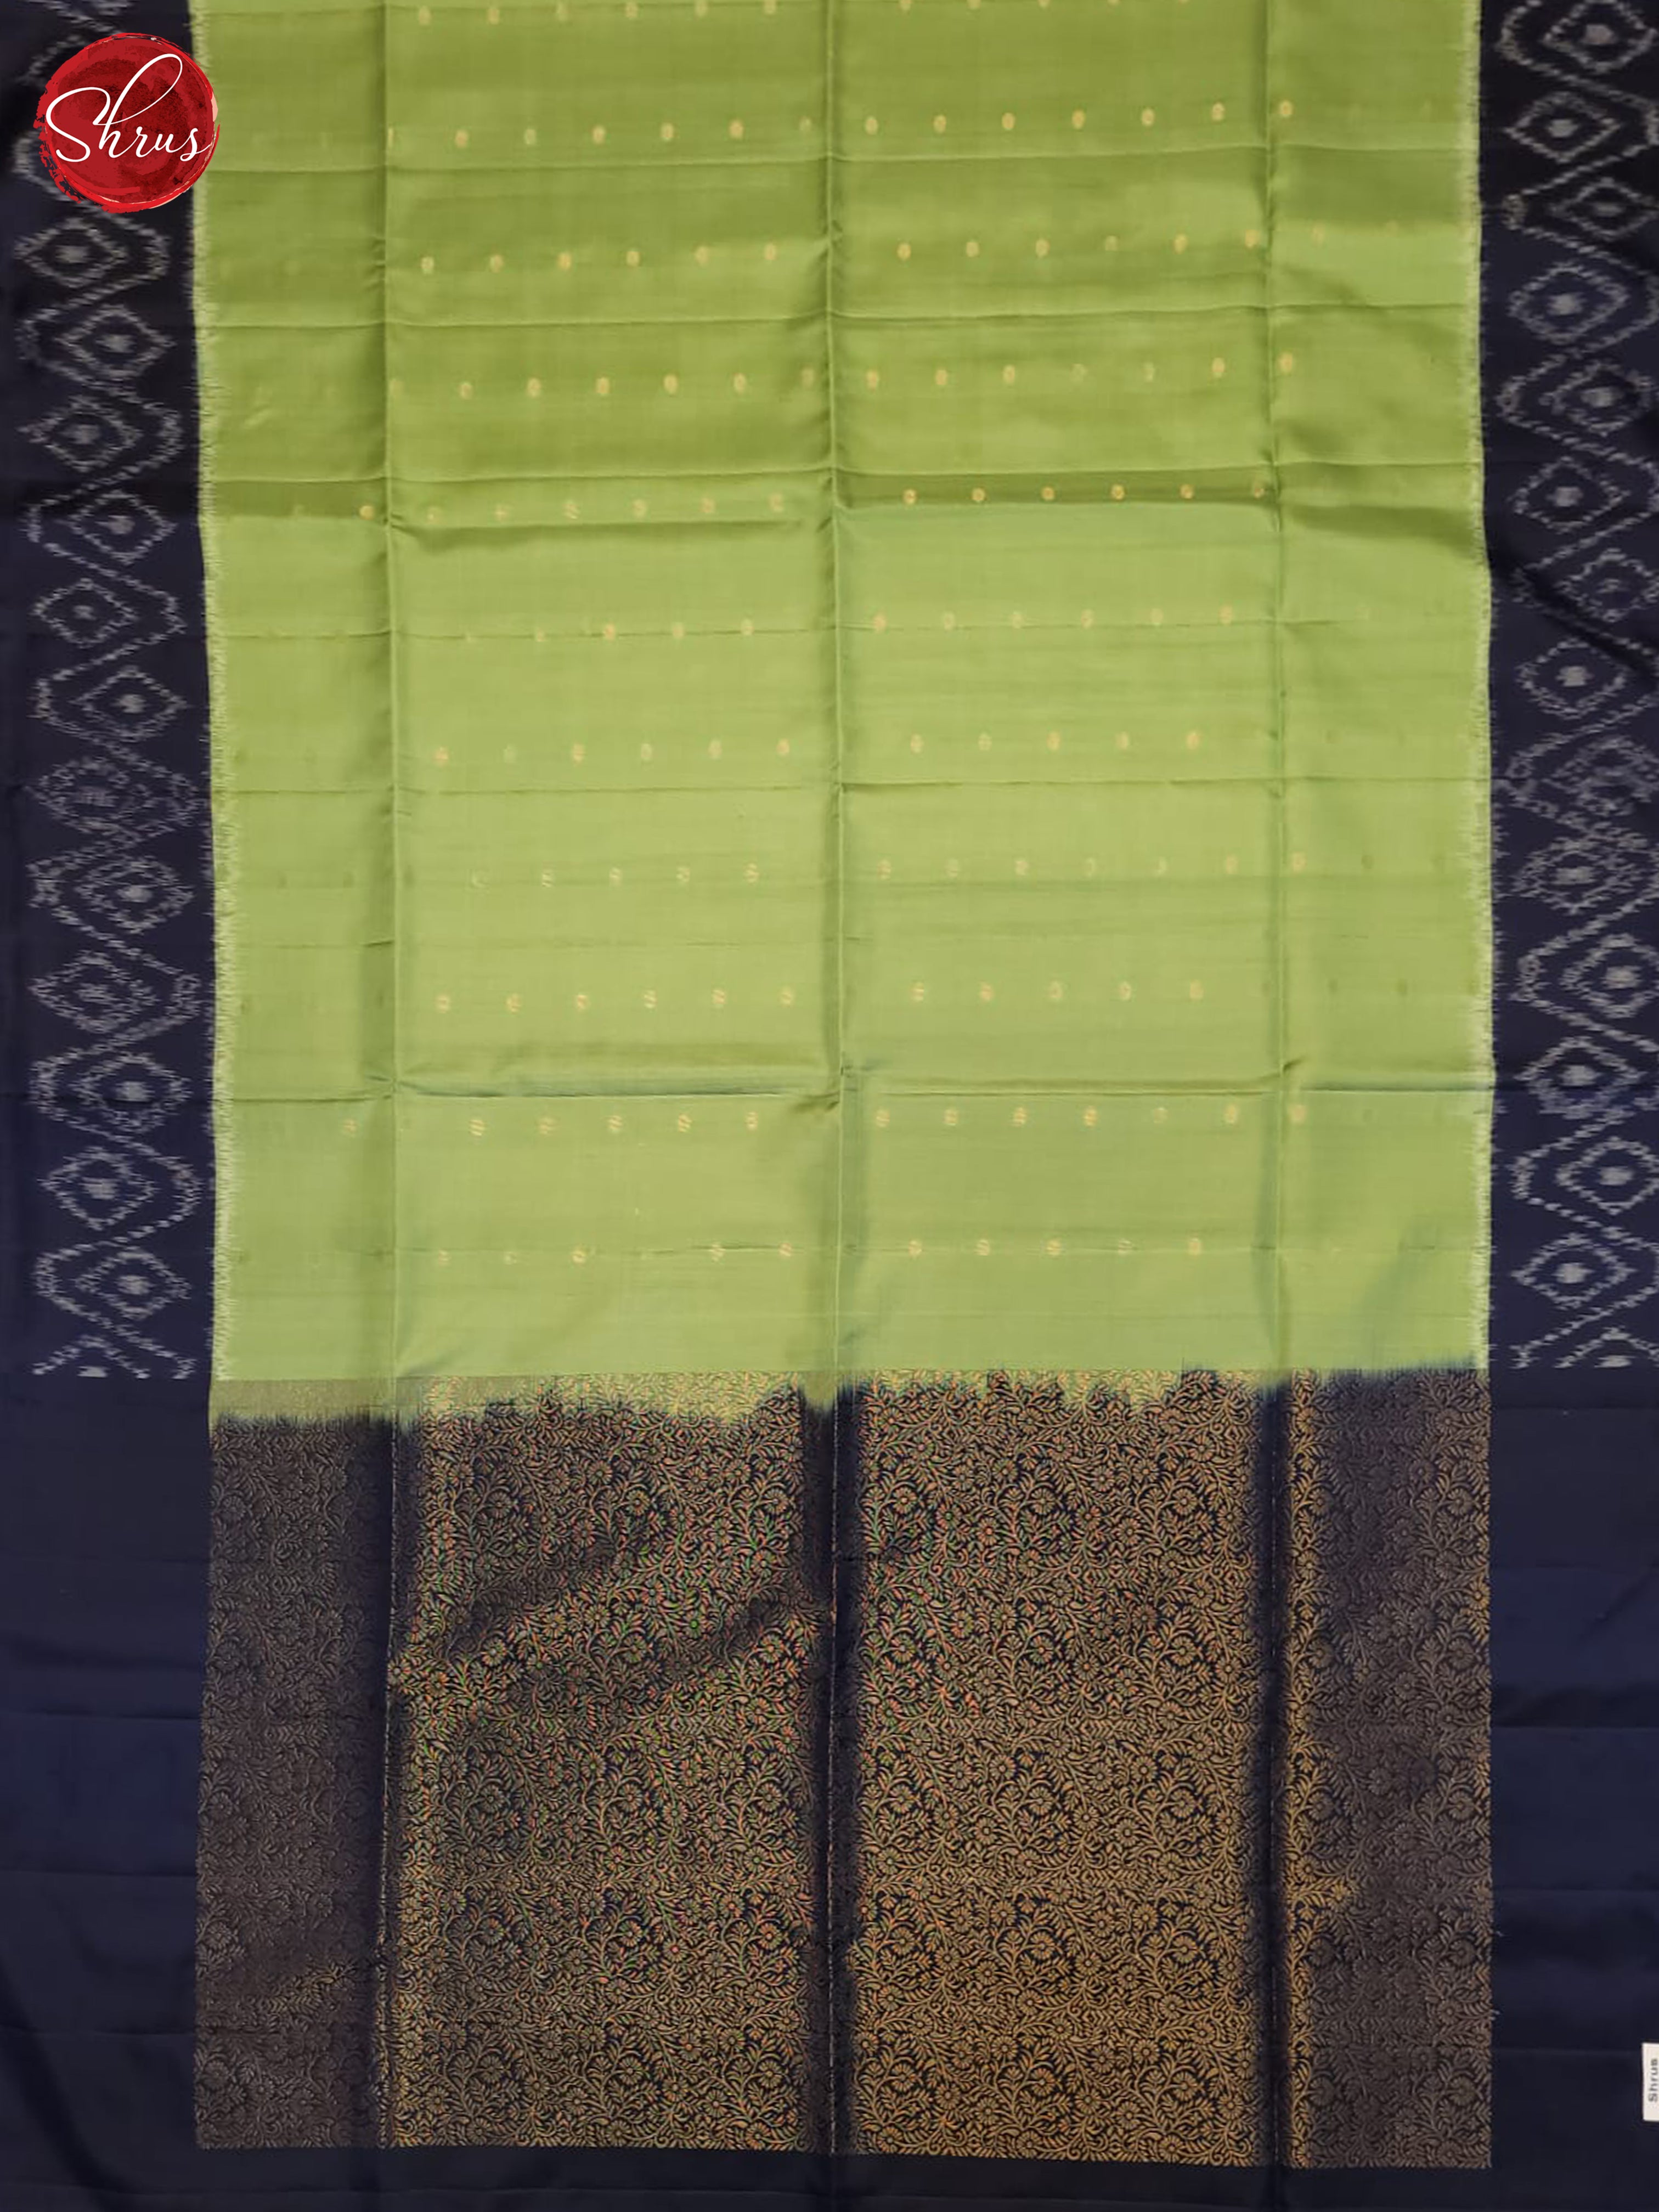 Green And Blue- Soft Silk Saree - Shop on ShrusEternity.com